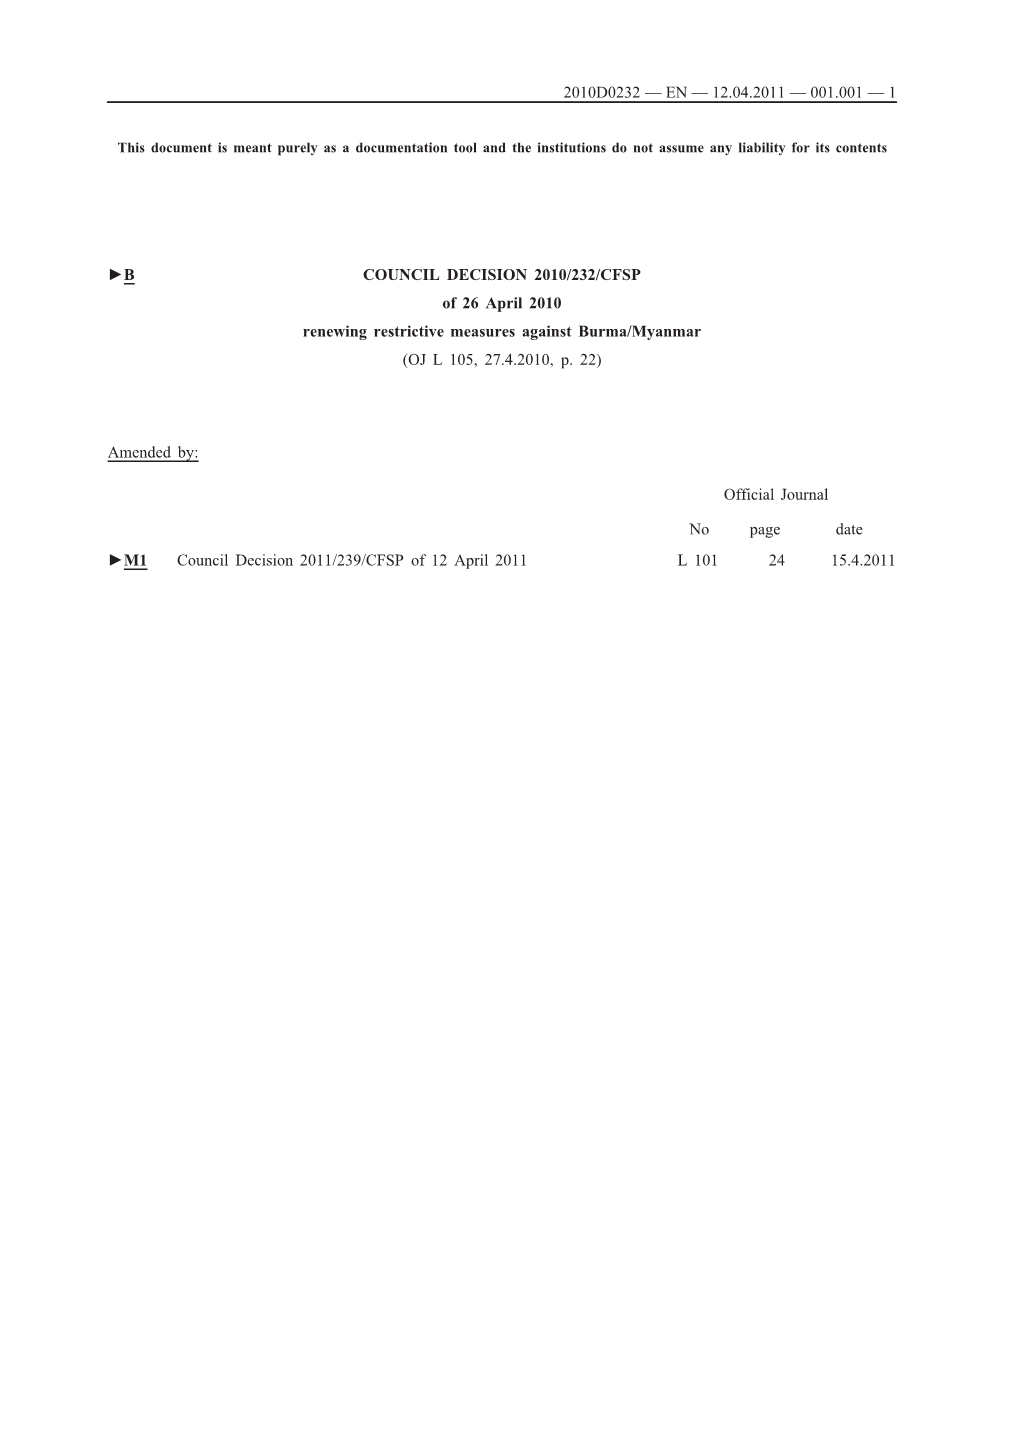 B COUNCIL DECISION 2010/232/CFSP of 26 April 2010 Renewing Restrictive Measures Against Burma/Myanmar (OJ L 105, 27.4.2010, P